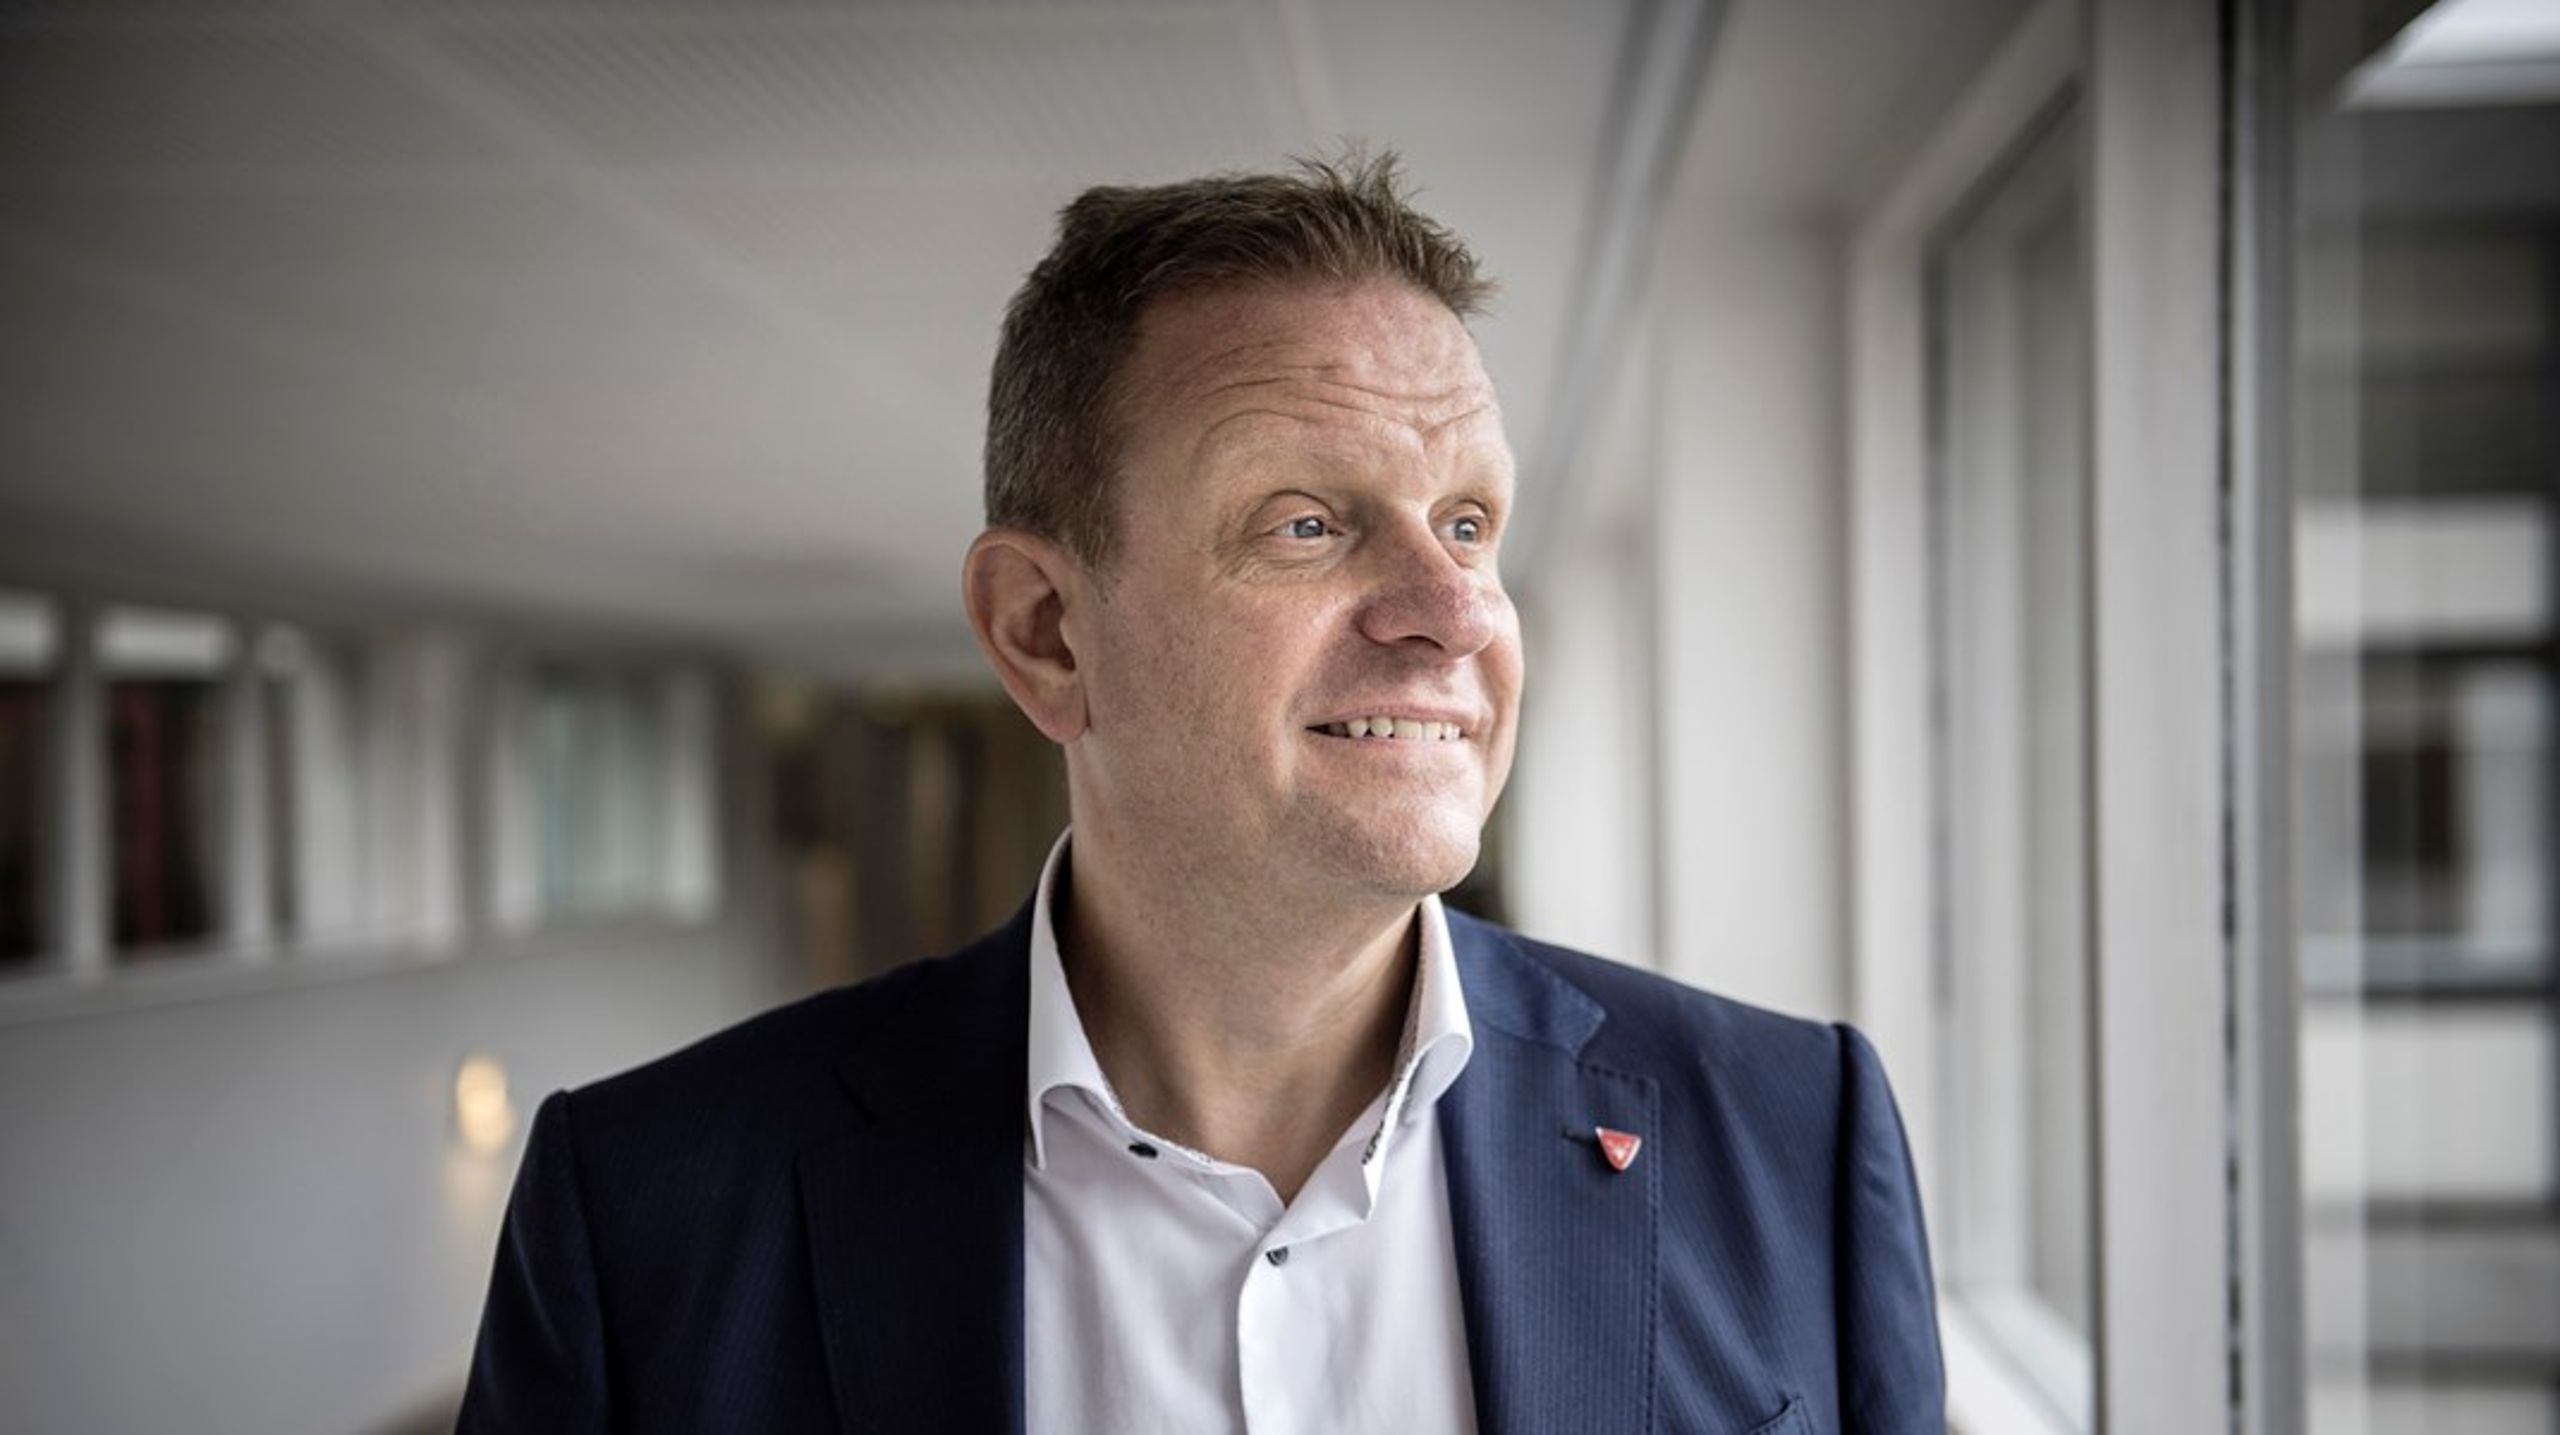 Hørsholm-borgmester Morten Slotved (K) er glad for, at Hørsholms kommunalvalgskandidater er enige i, at flere offentlige opgaver skal løses af private virksomheder.